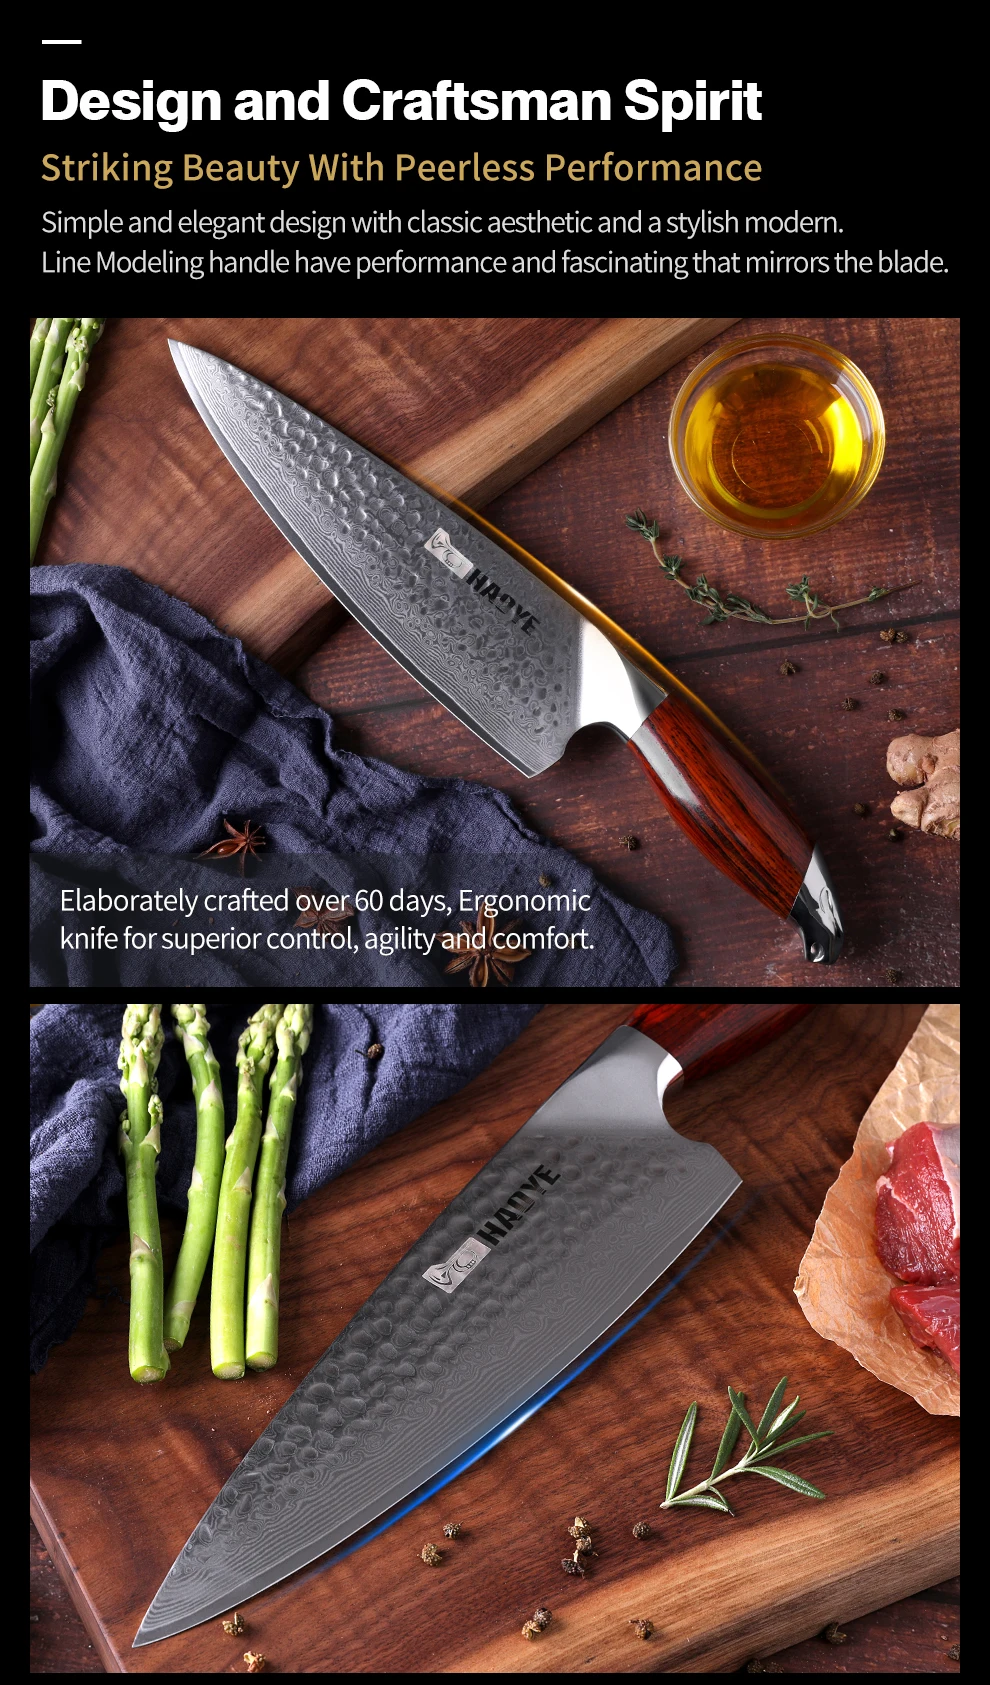 Японские кухонные ножи vg10 Дамасская сталь 8 дюймов нож шеф-повара ручной работы молоток с ручкой из палисандра индивидуальность мастер по приготовлению пищи